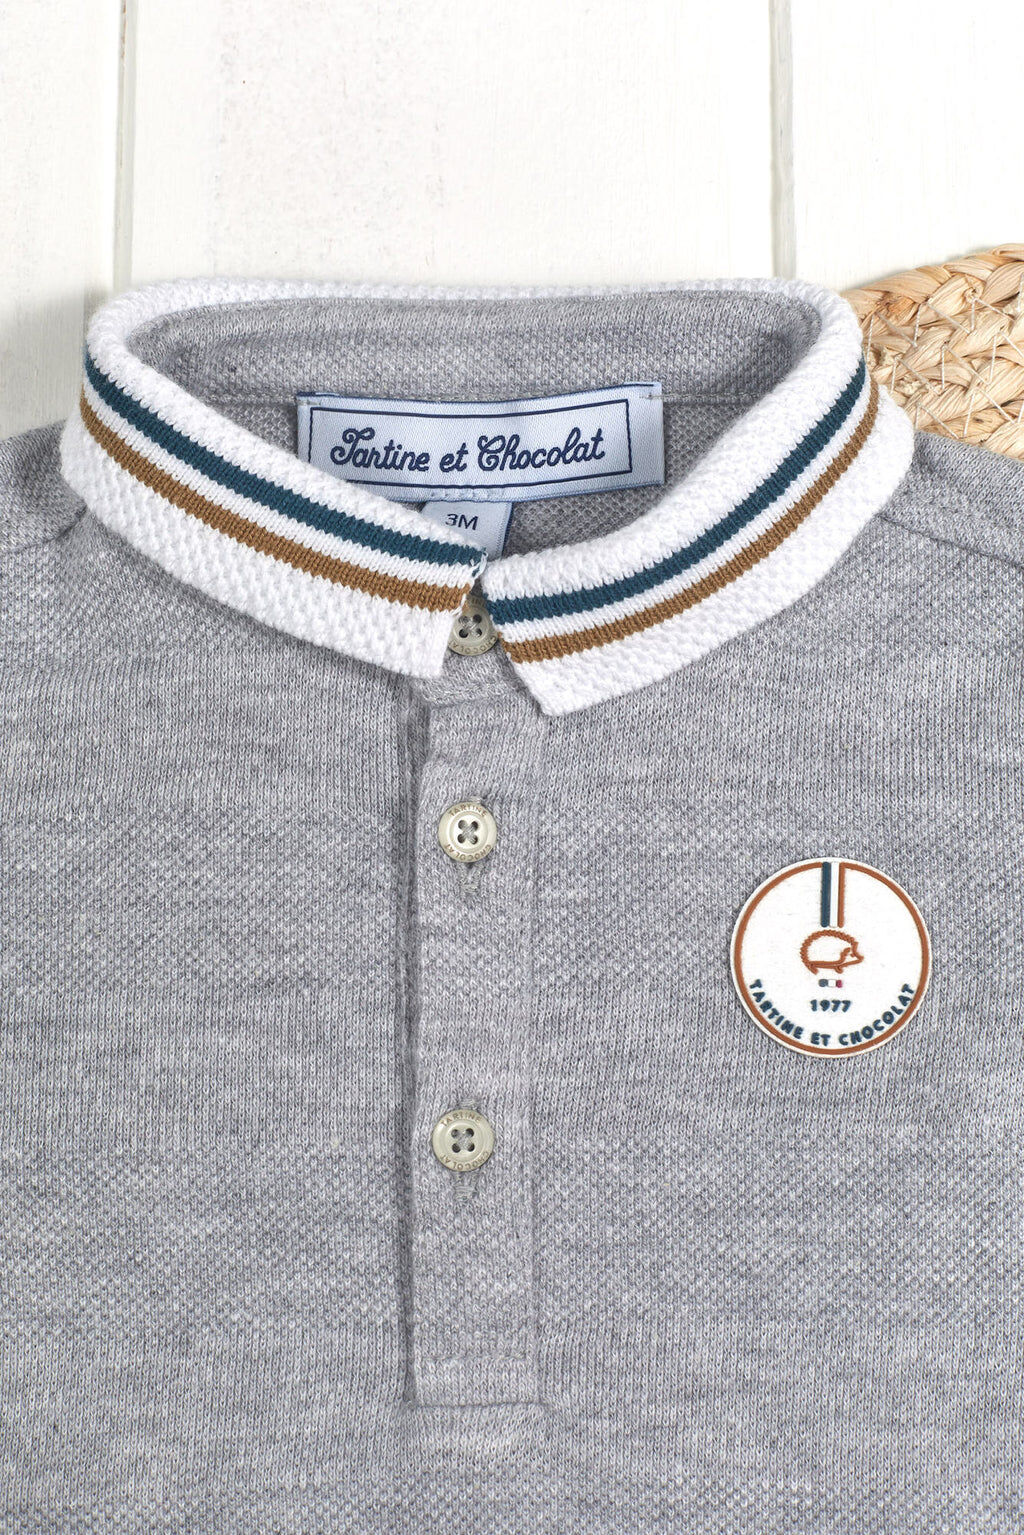 Polo Shirt - Cotton Grey tricolor